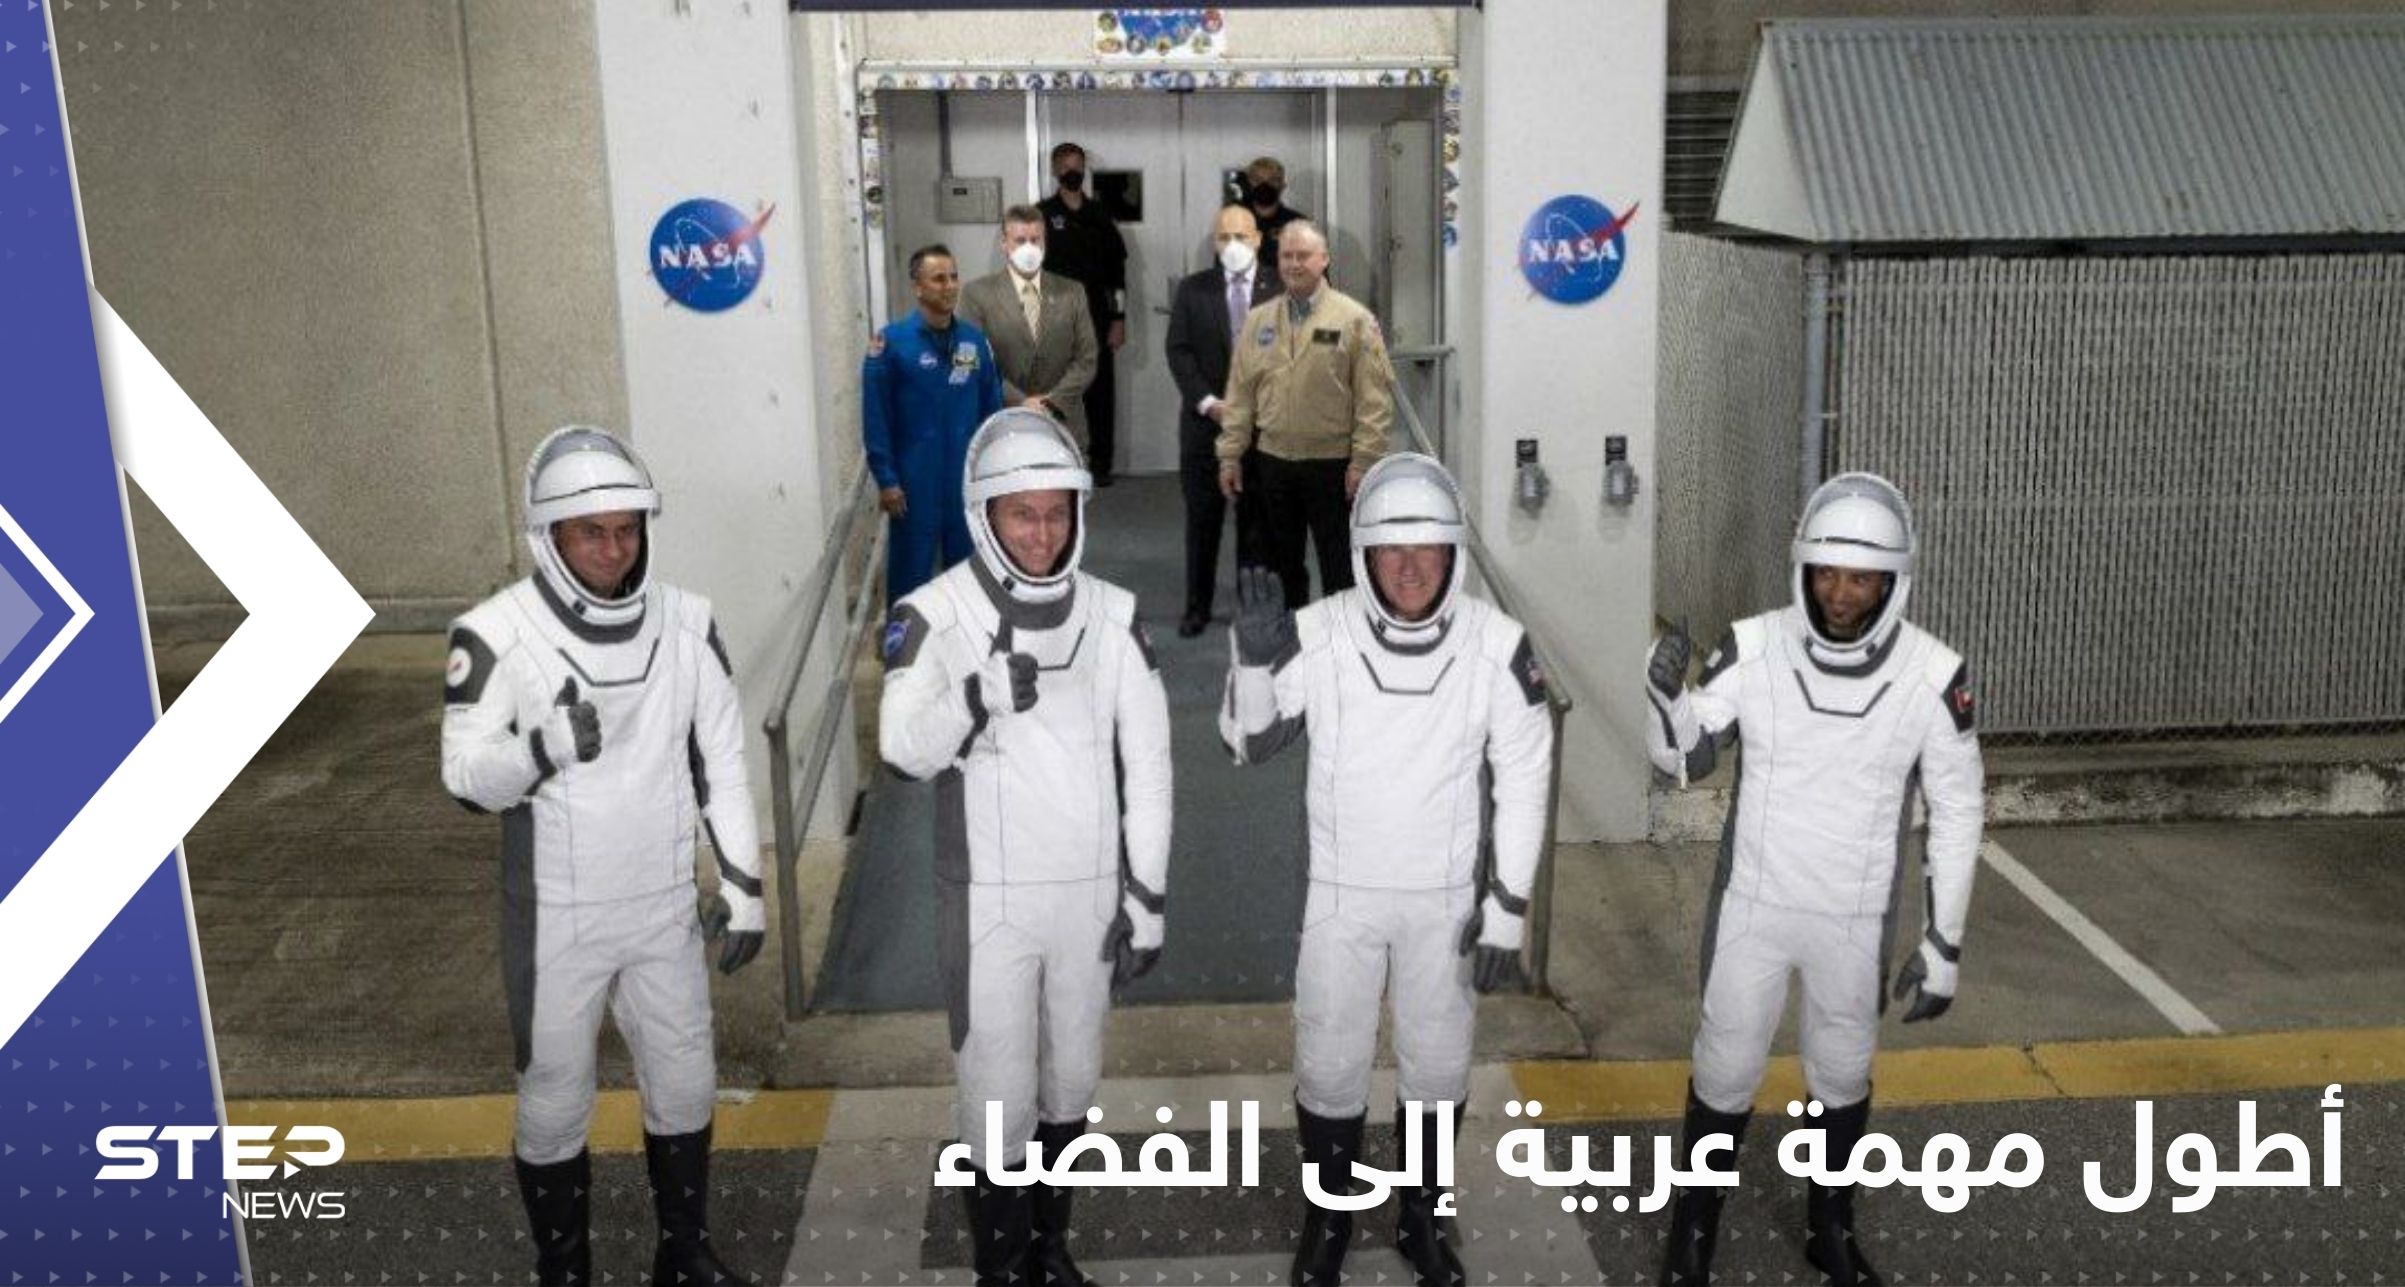 سلطان النيادي ينطلق بأطول مهمة عربية إلى الفضاء